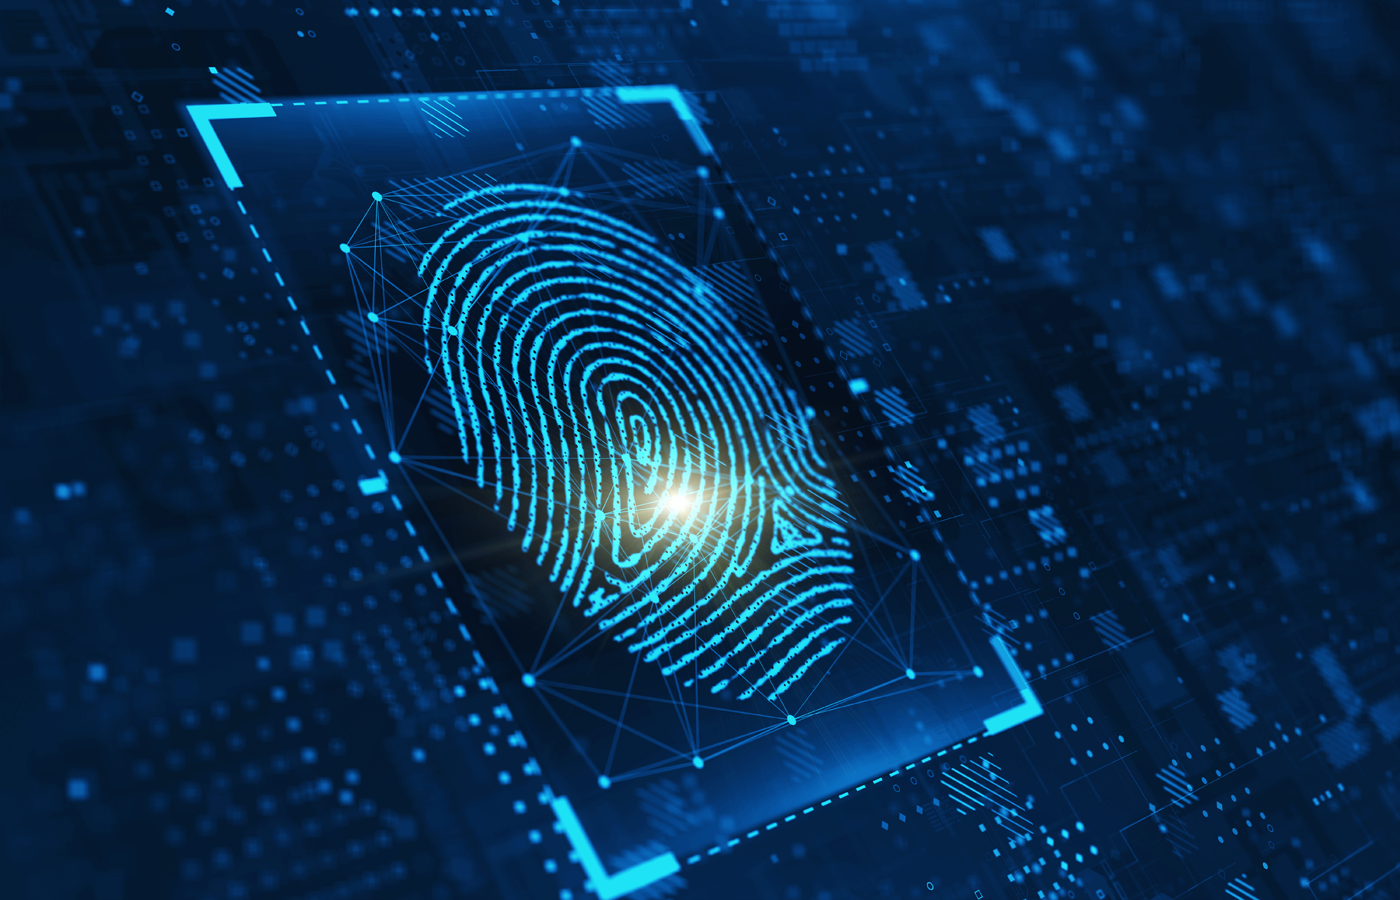 Digital image of a fingerprint on a technological background.